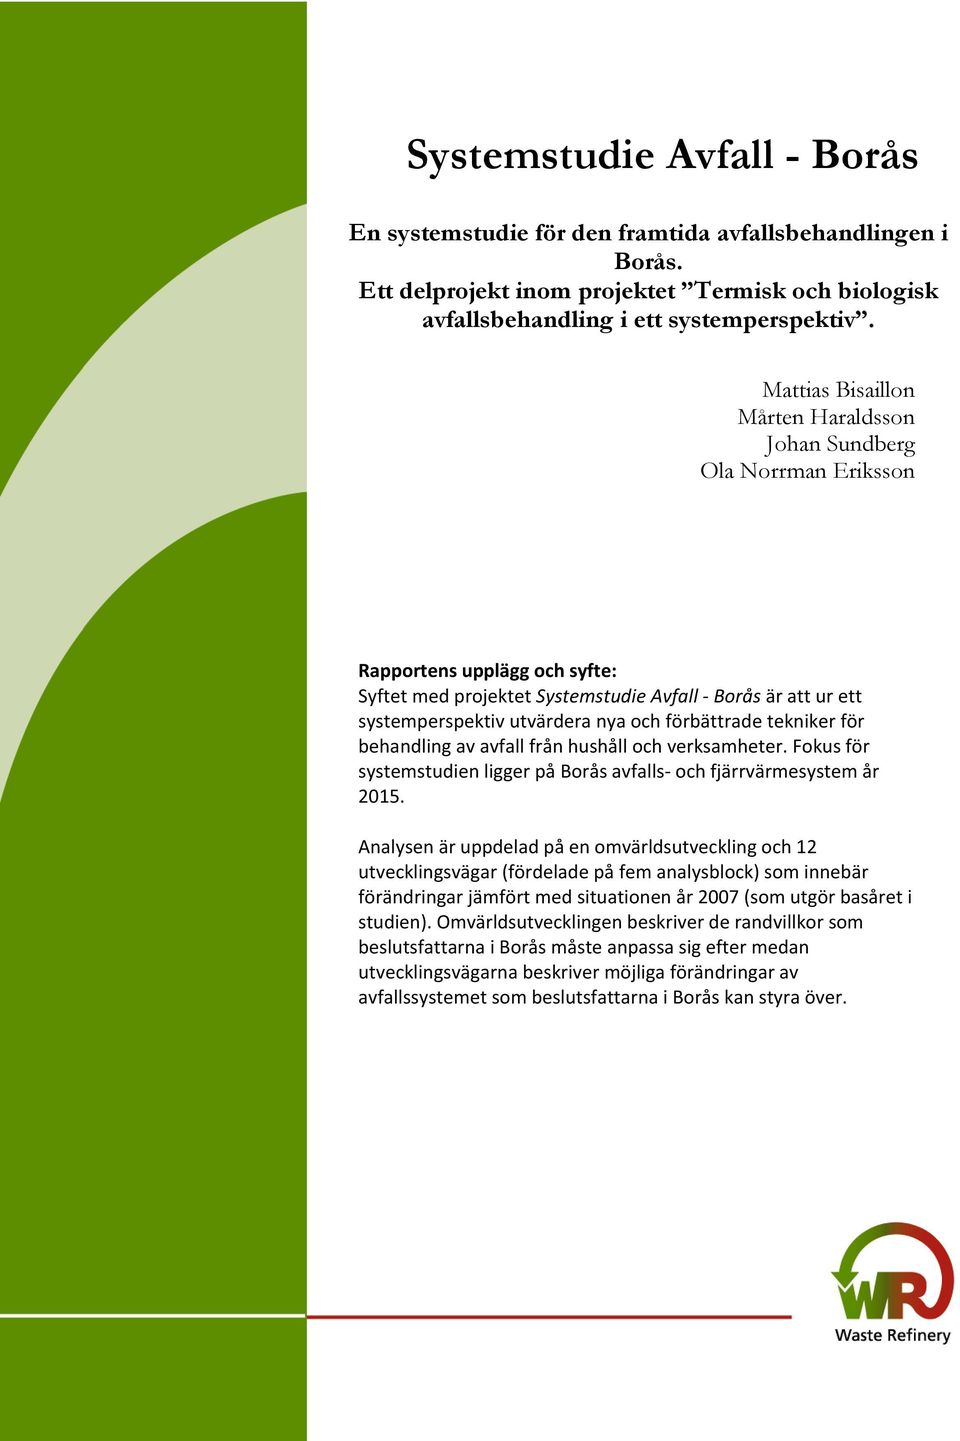 förbättrade tekniker för behandling av avfall från hushåll och verksamheter. Fokus för systemstudien ligger på Borås avfalls- och fjärrvärmesystem år 2015.